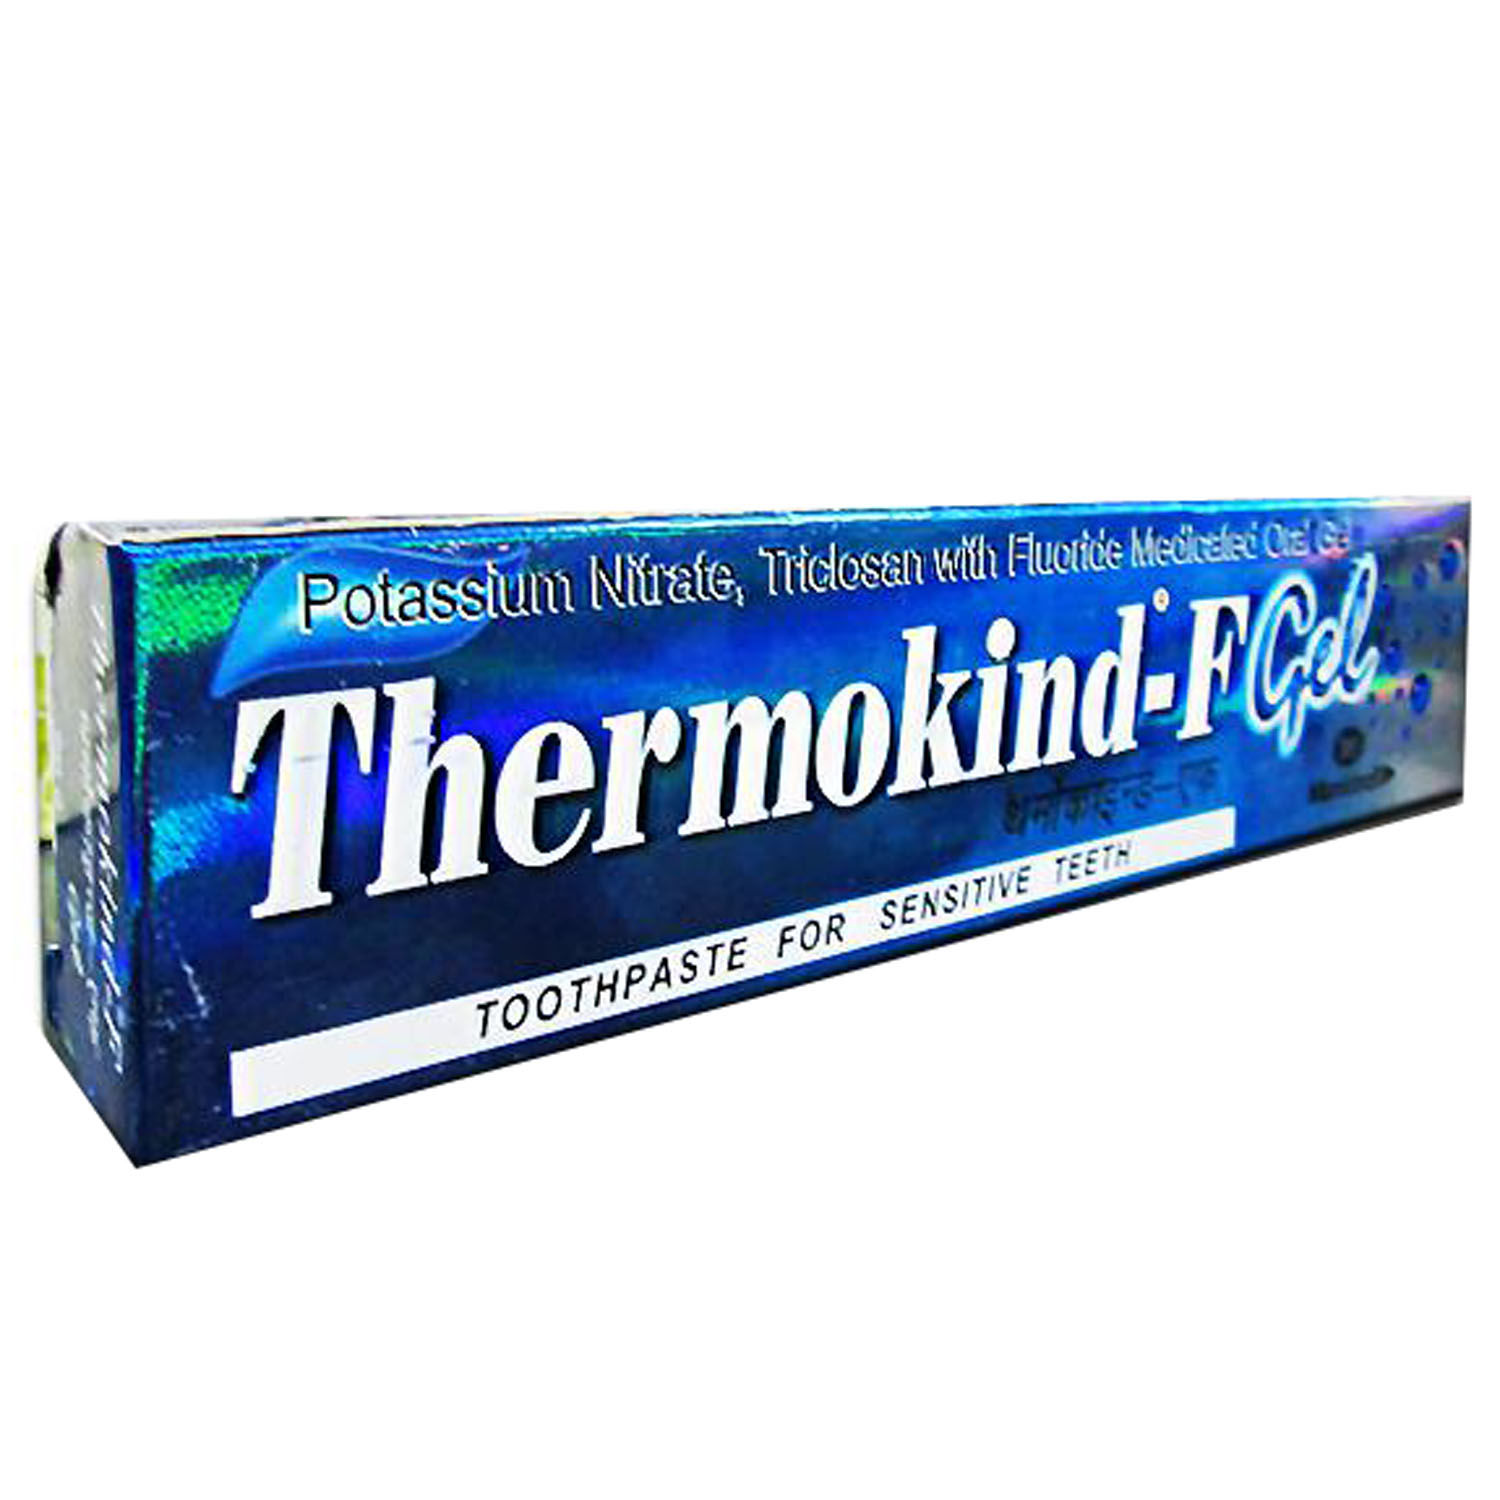 Buy Thermokind-F Gel Sensitive Teeth Toothpaste, 50 gm Online